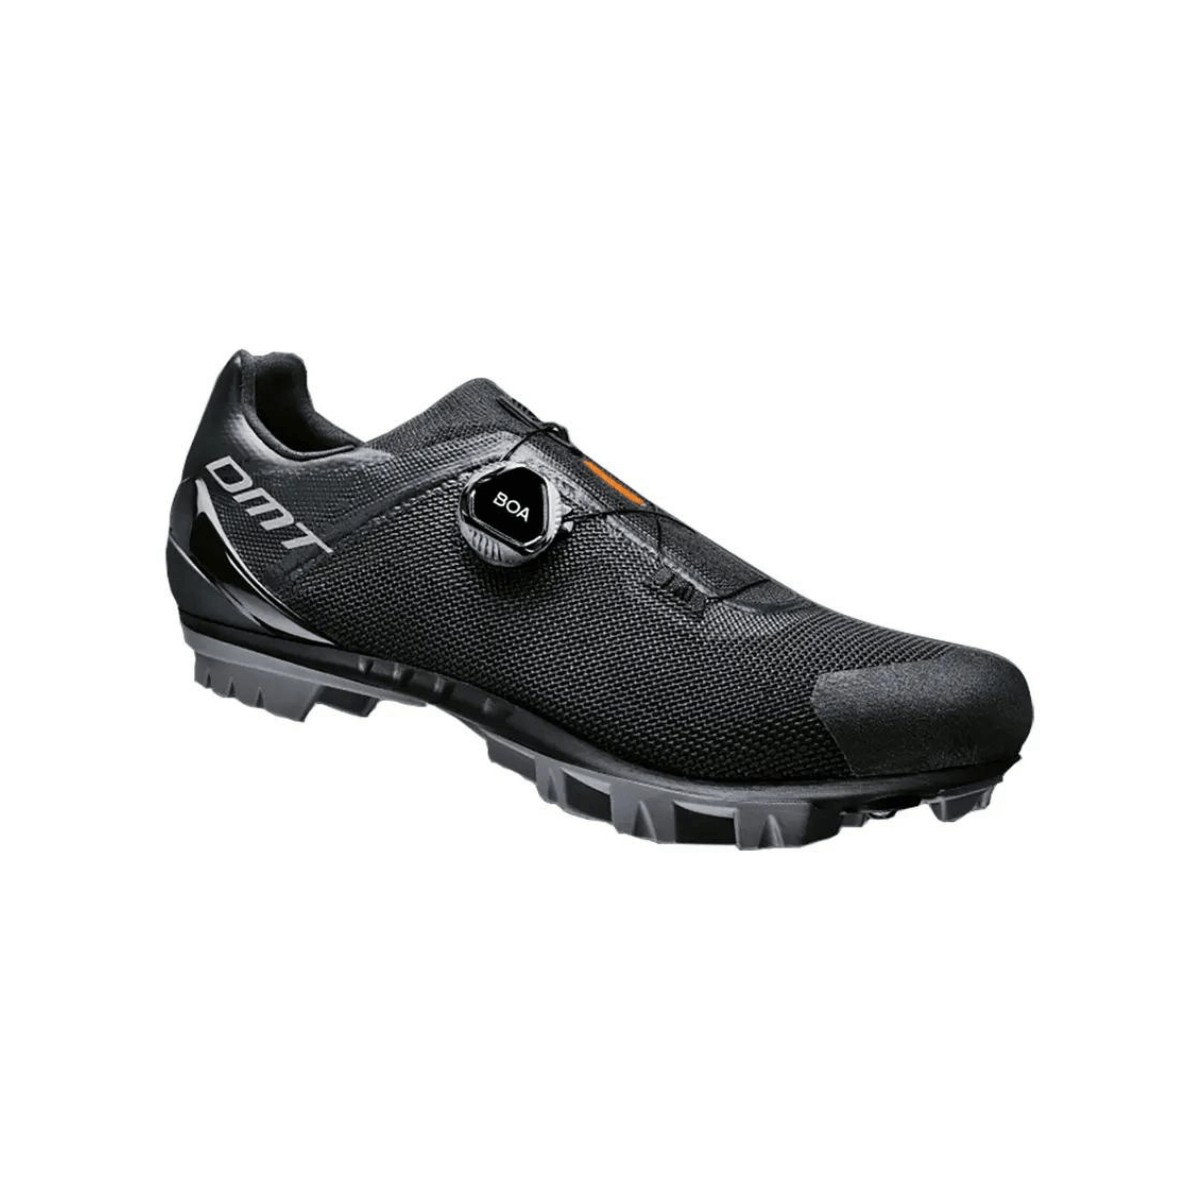 DMT KM4 Shoes Black, Size 47 - EUR